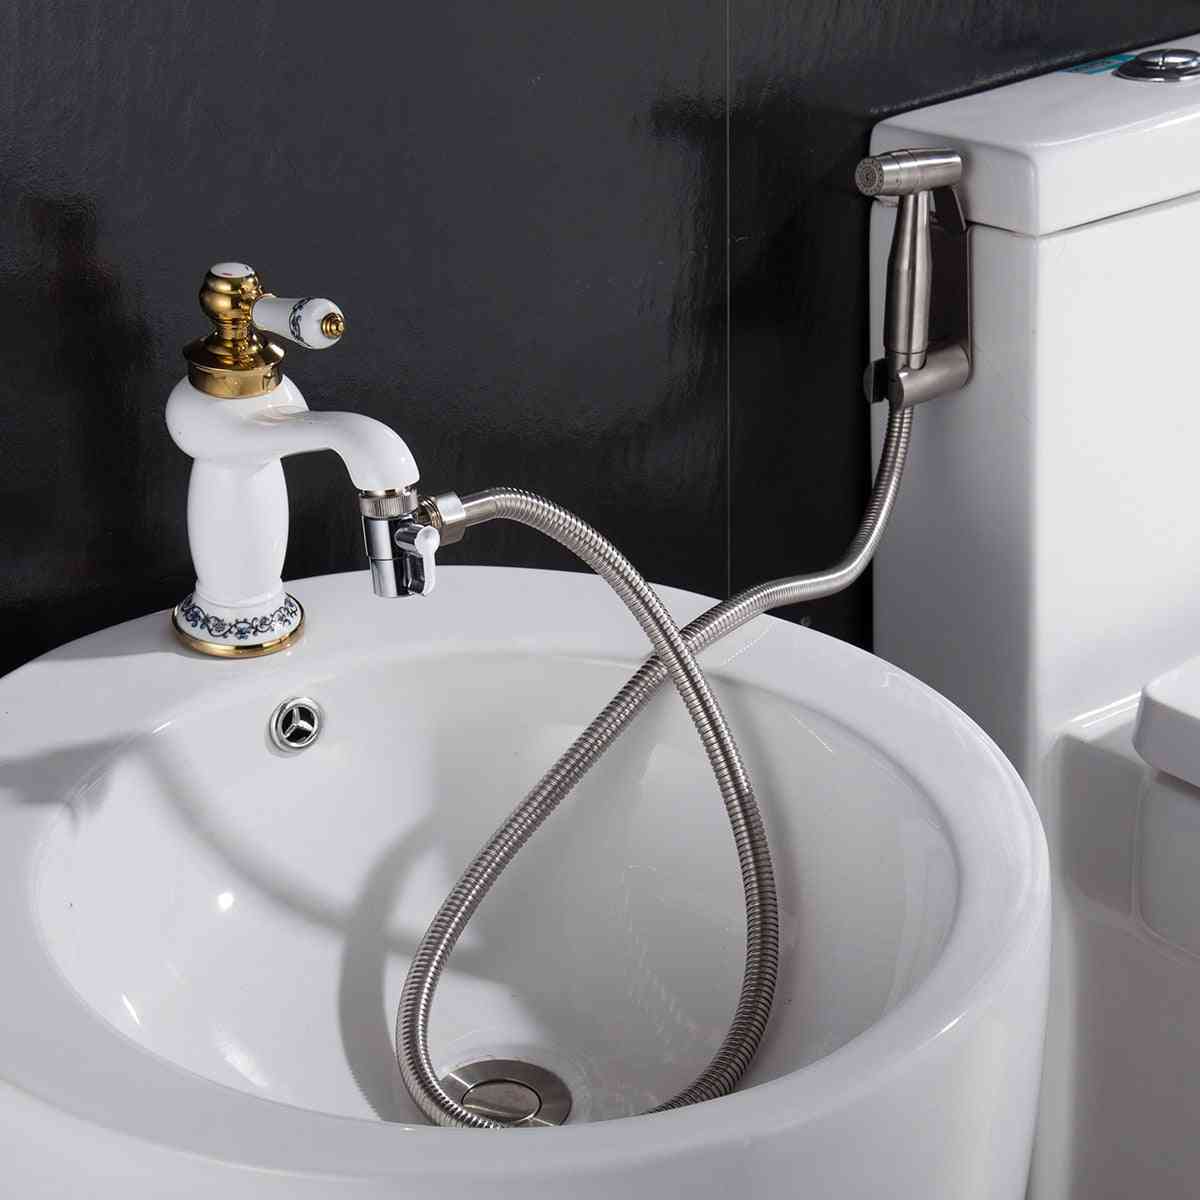 Alamă chiuvetă robinet deviator pentru a scufunda furtun pulverizator, separator robinet pentru bucătărie, chiuvetă robinet piesă de schimb